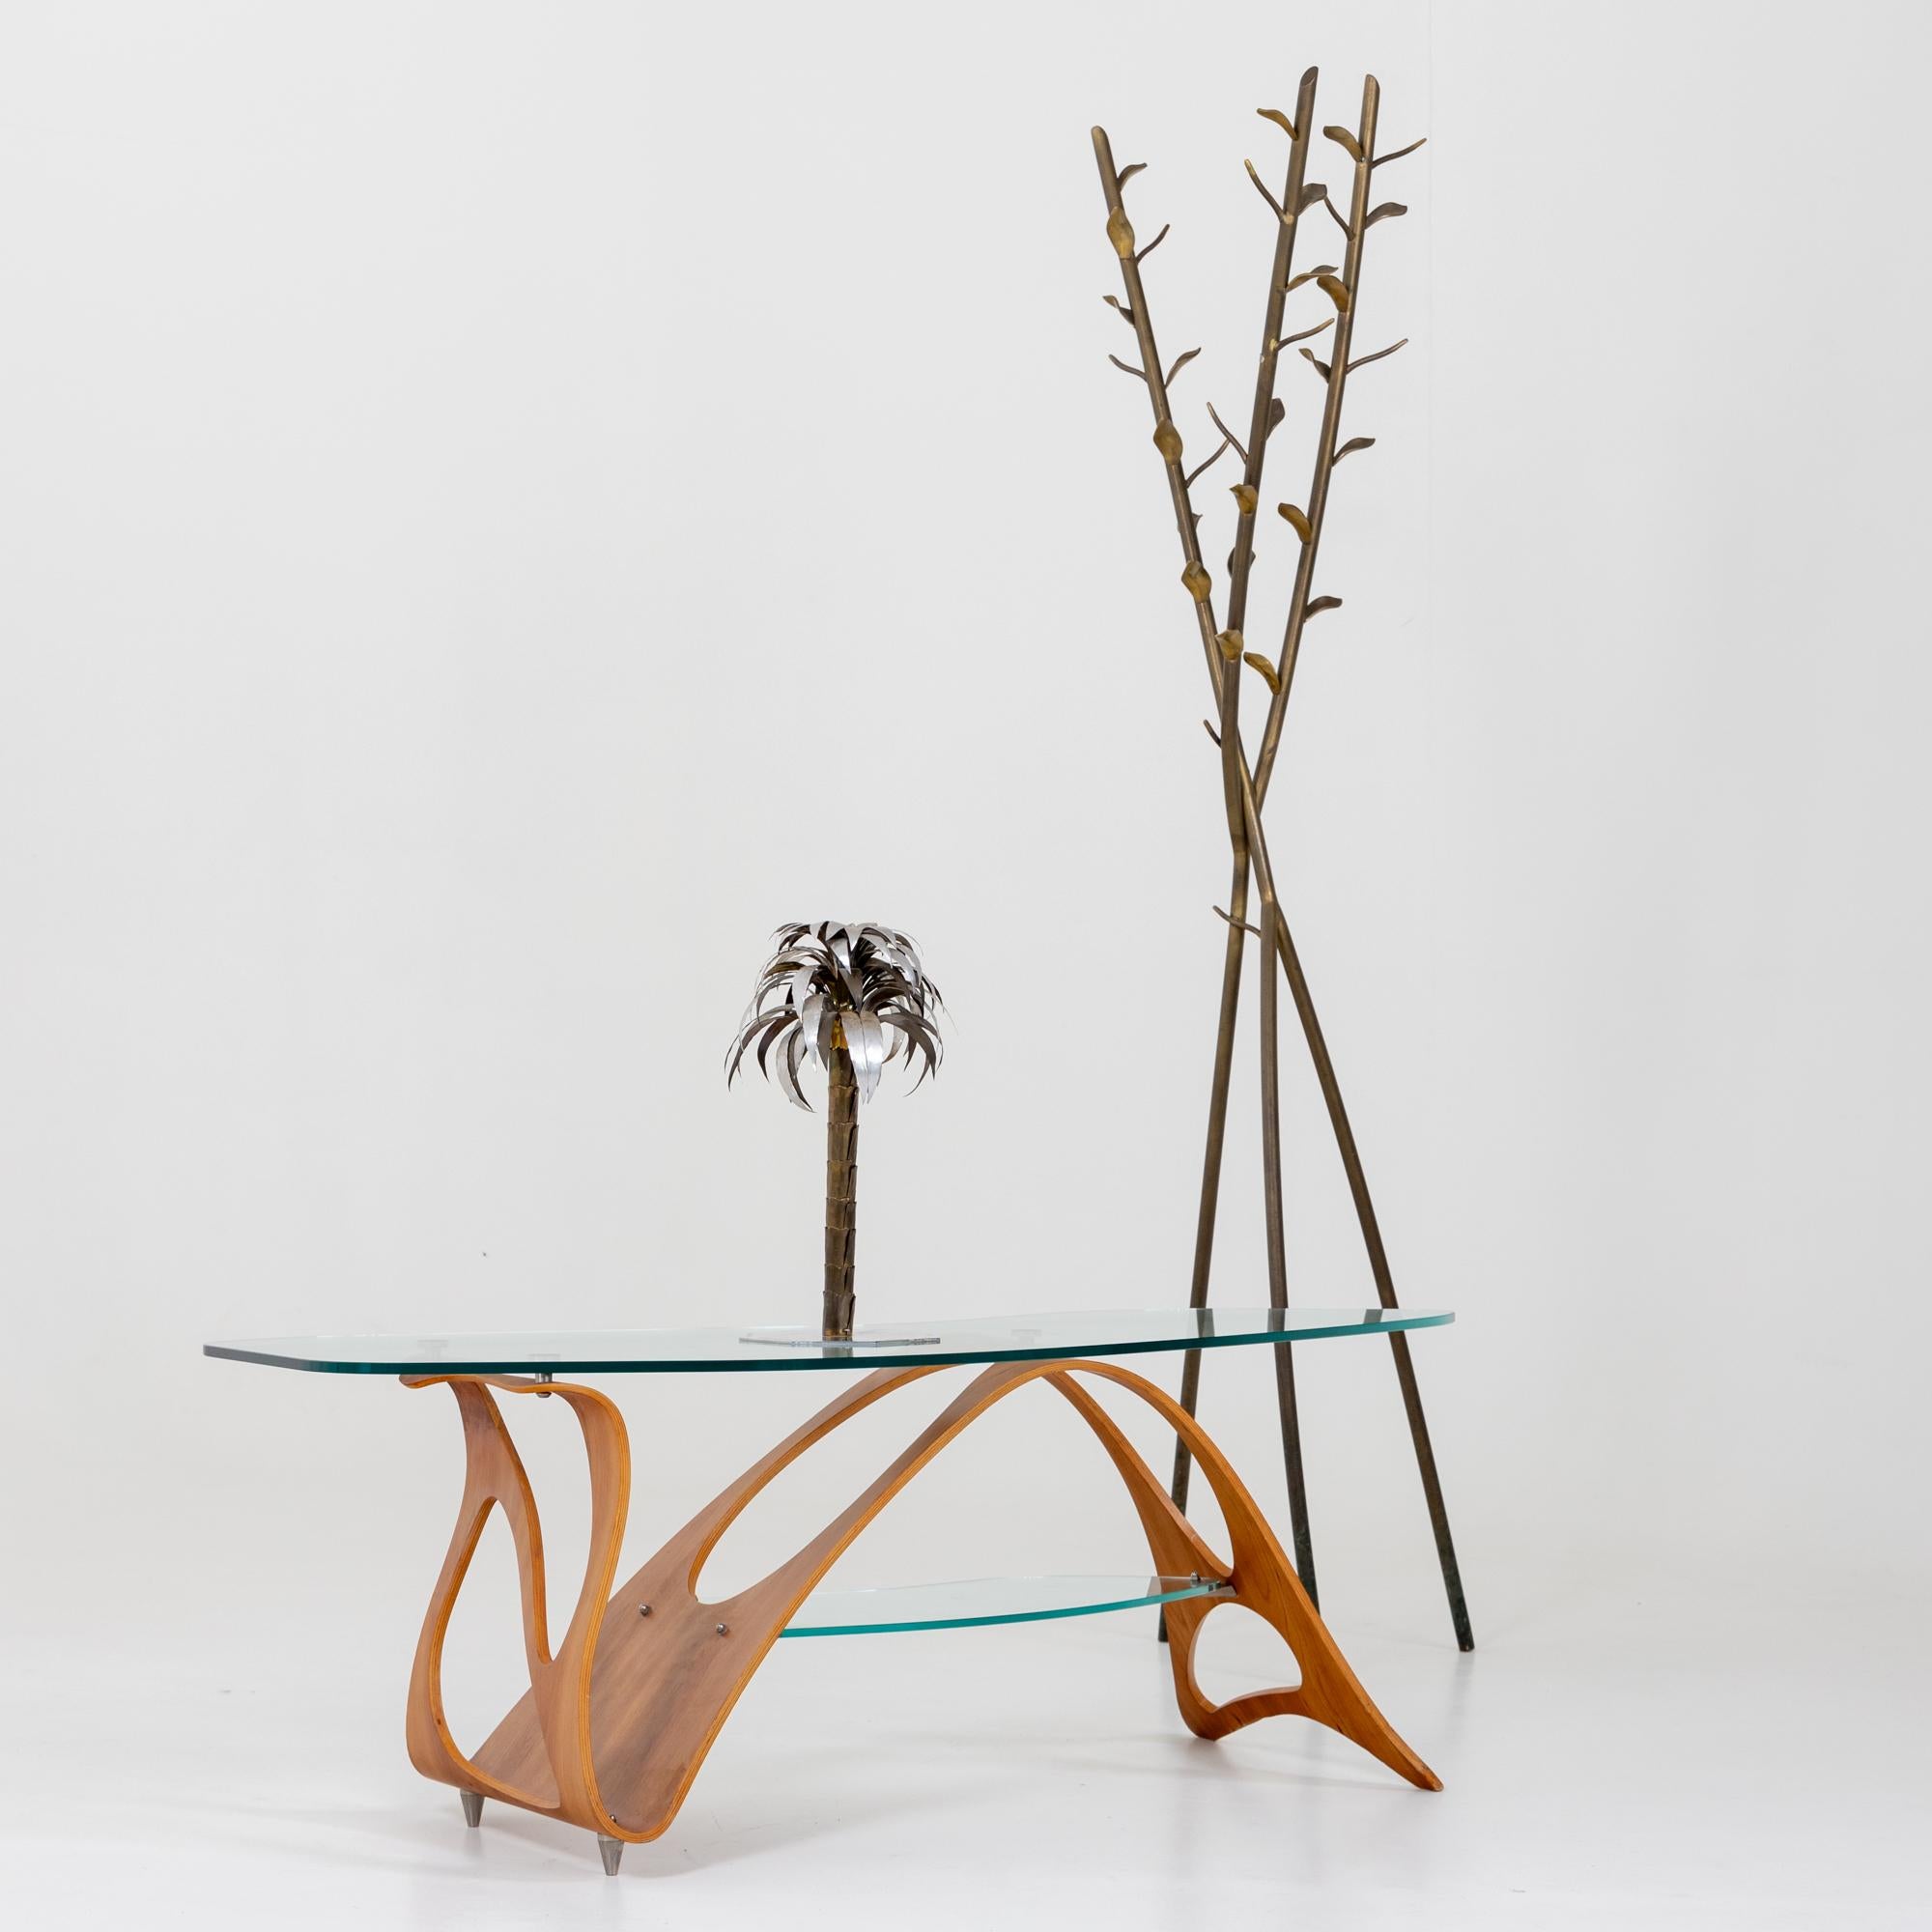 Conçue à l'origine en 1949, la table basse Arabesco de Carlo Mollino est dotée d'une magnifique base de forme organique et de deux plateaux en verre de cristal. La base est estampillée 